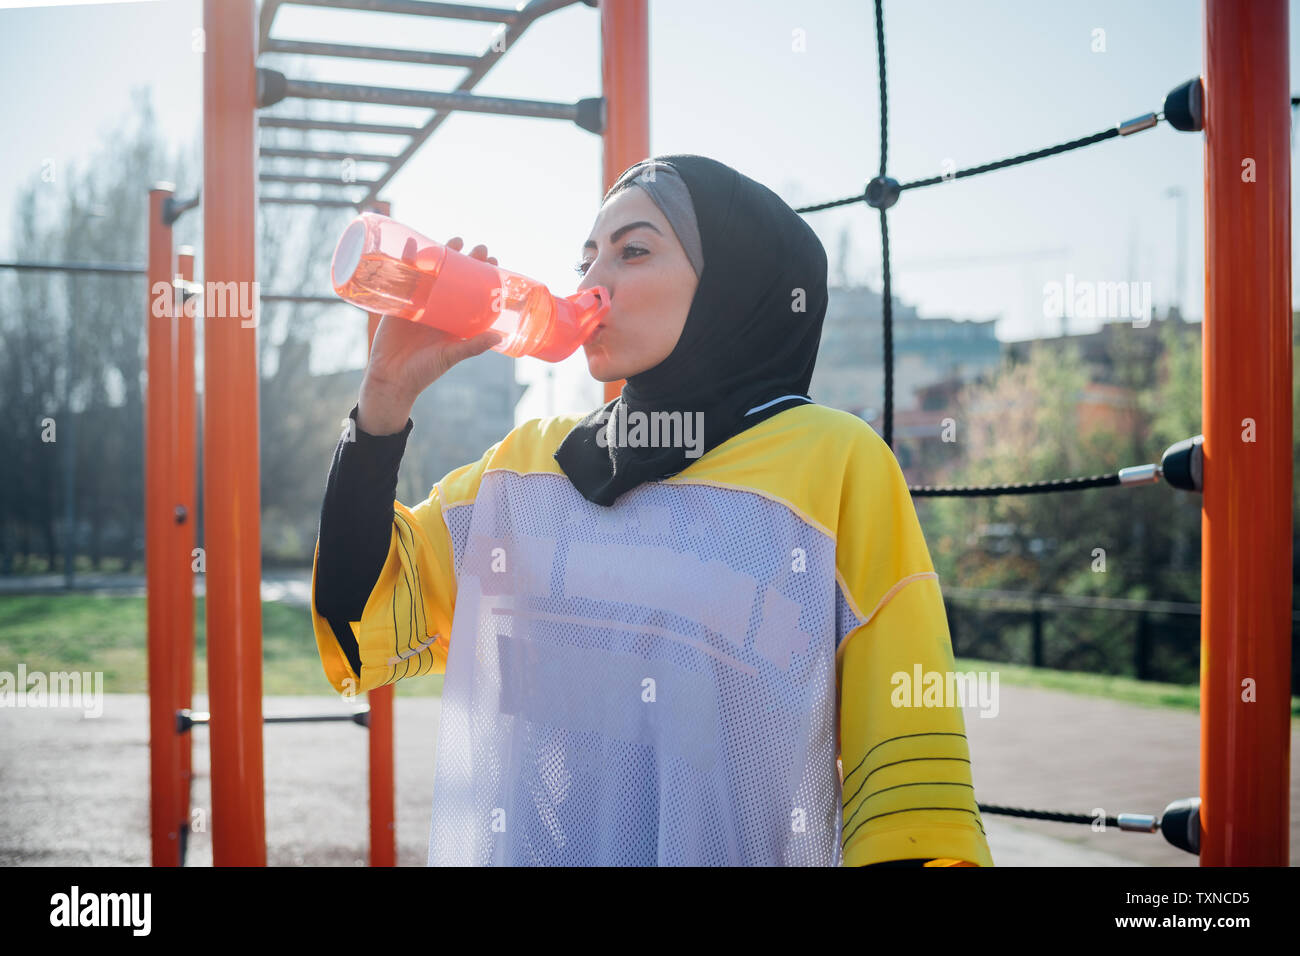 Calisthenics Klasse im Fitnessbereich im Freien, junge Frau trinkt aus der Flasche Wasser Stockfoto